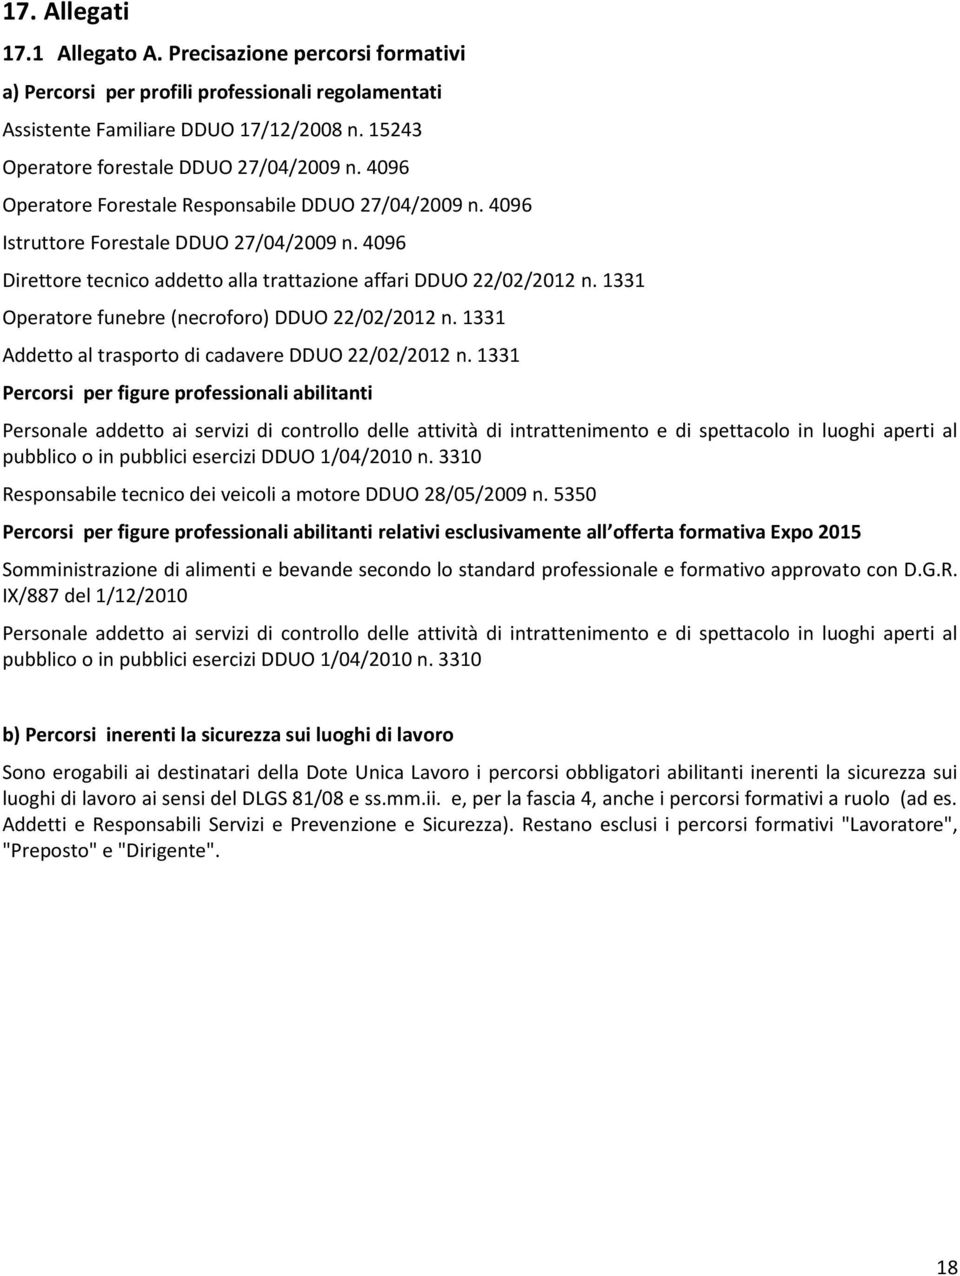 1331 Operatore funebre (necroforo) DDUO 22/02/2012 n. 1331 Addetto al trasporto di cadavere DDUO 22/02/2012 n.